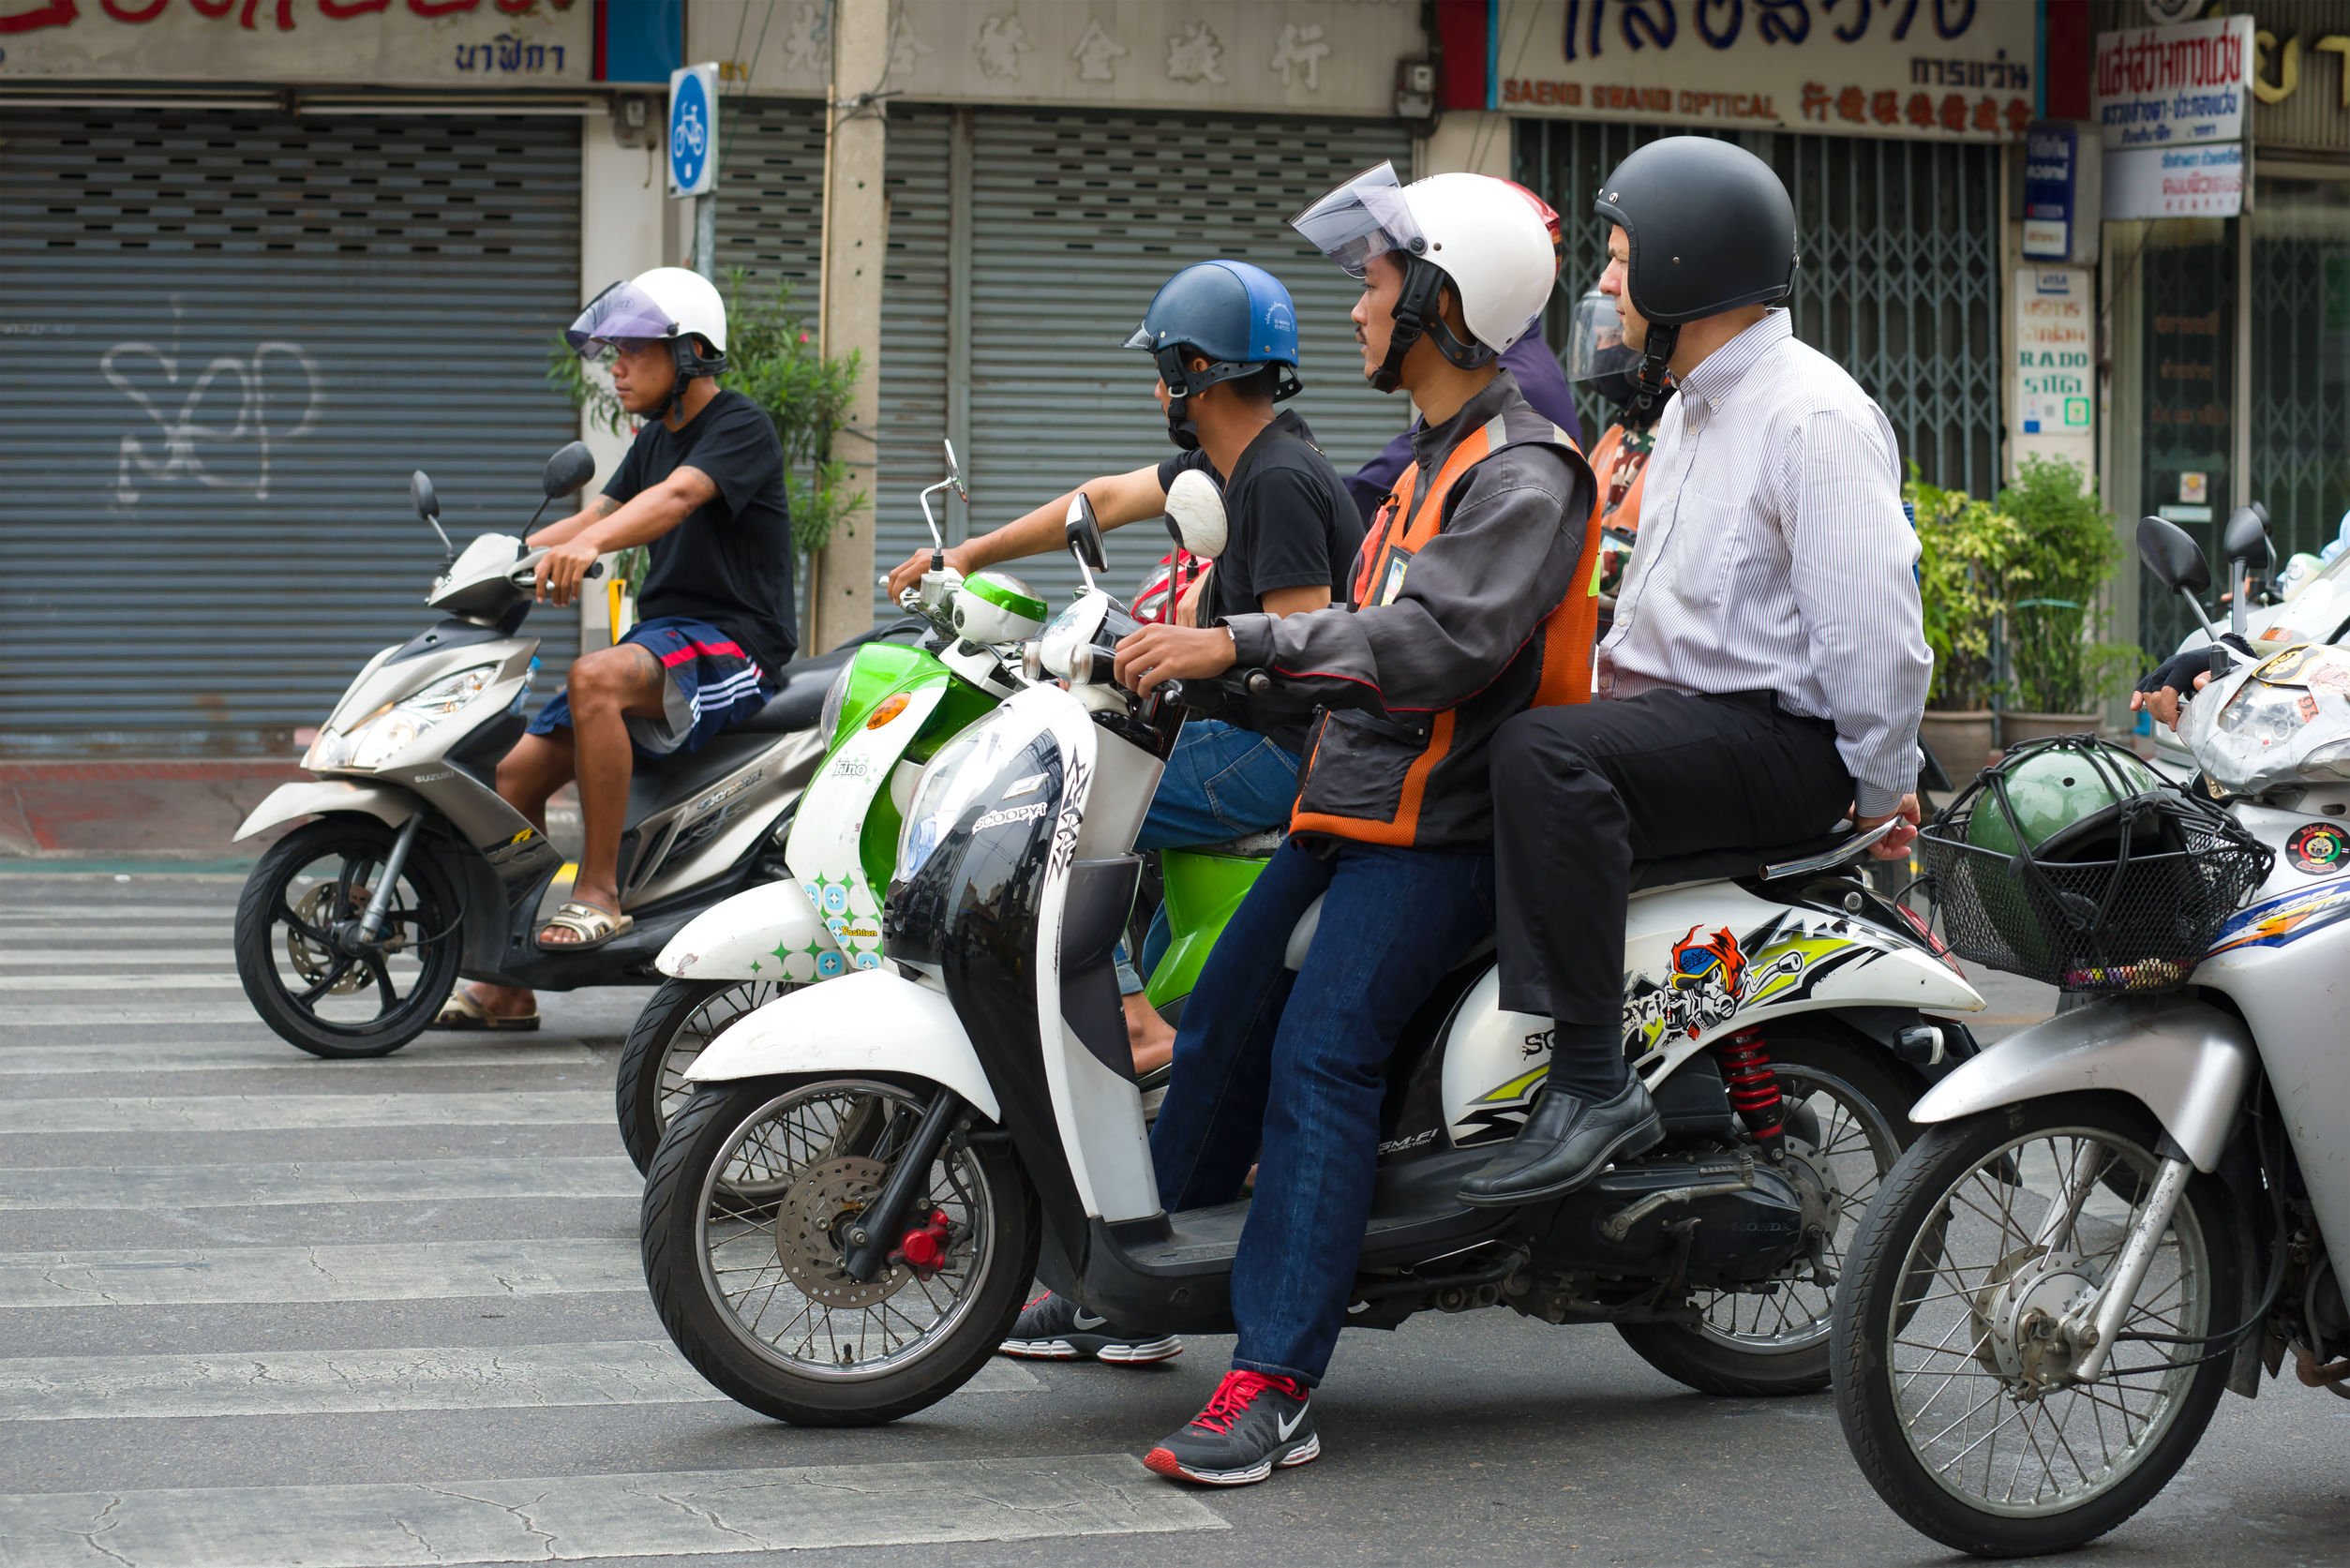 Diversos motoqueiros em motos brancas, pilotando pela rua